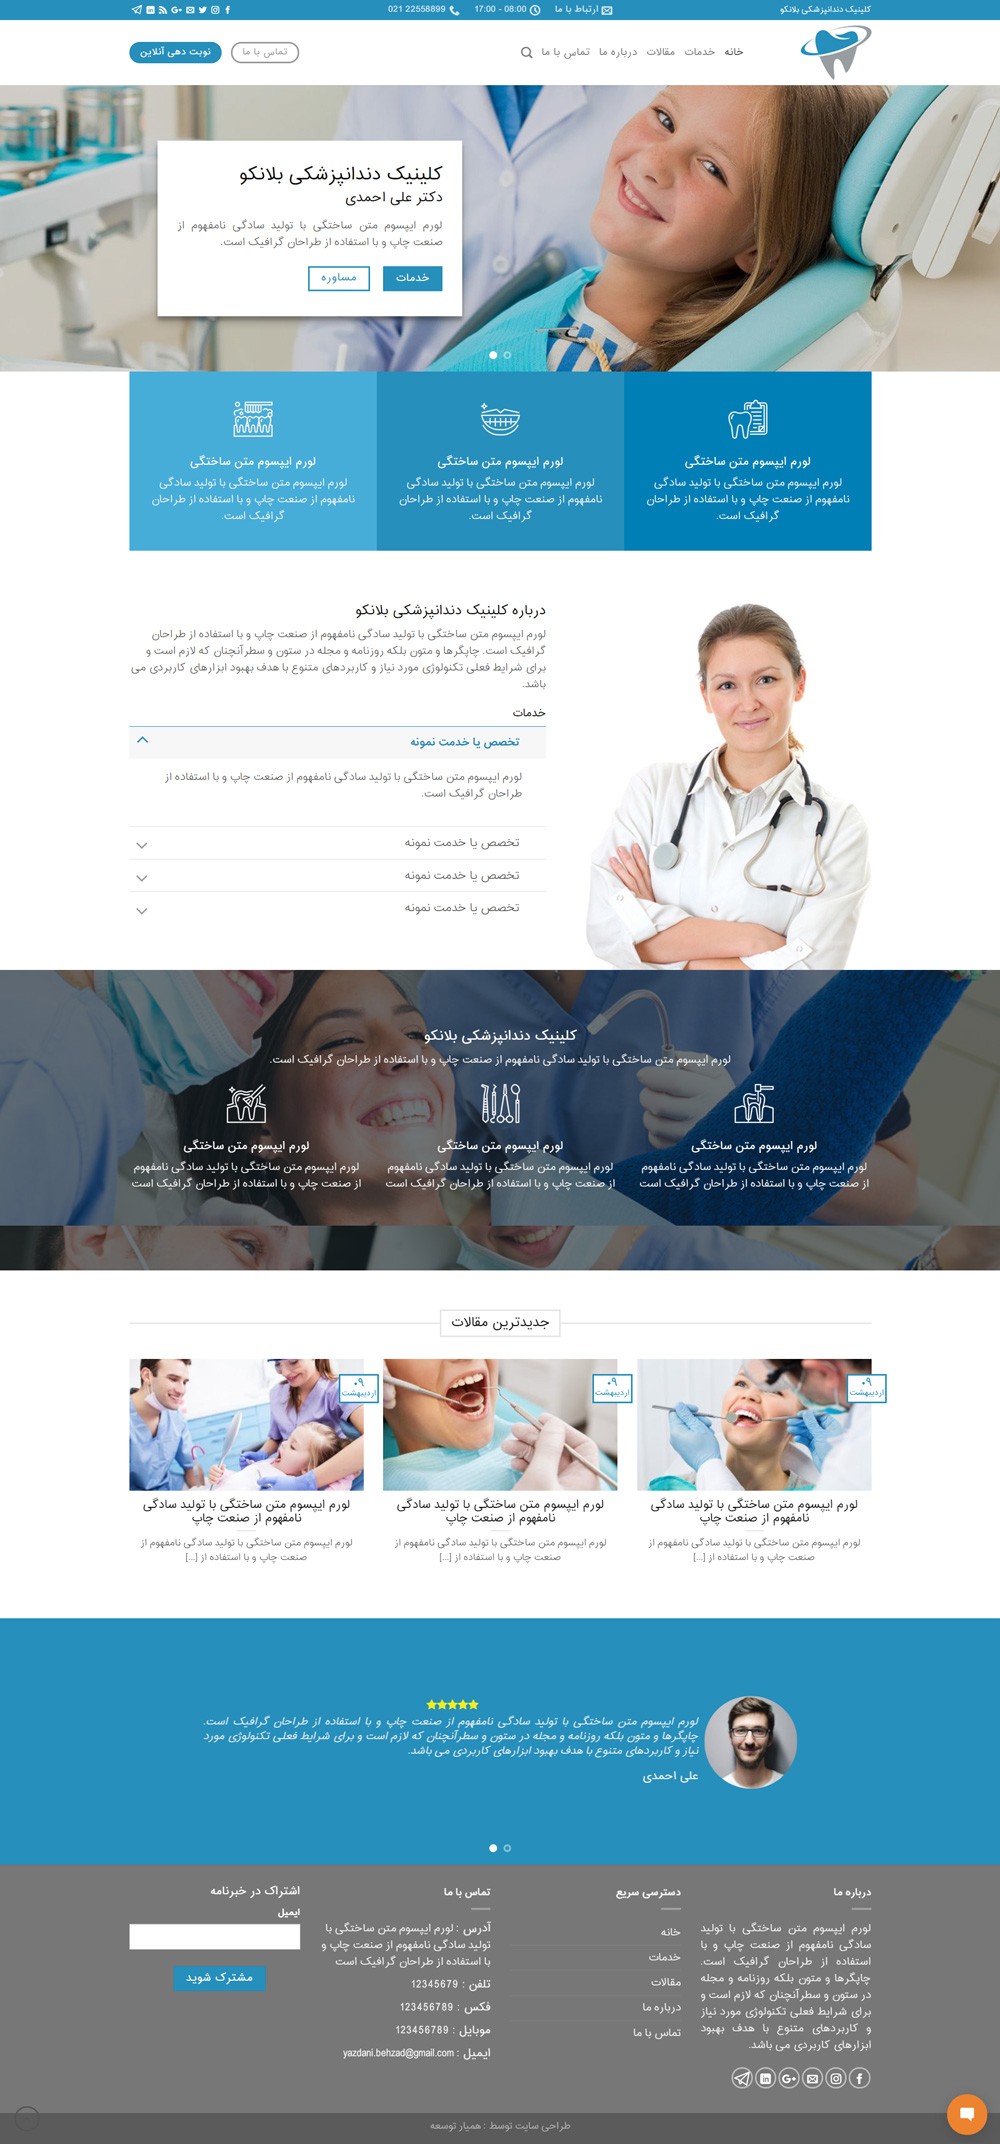 طراحی سایت کلینیک دندانپزشکی بلانکو